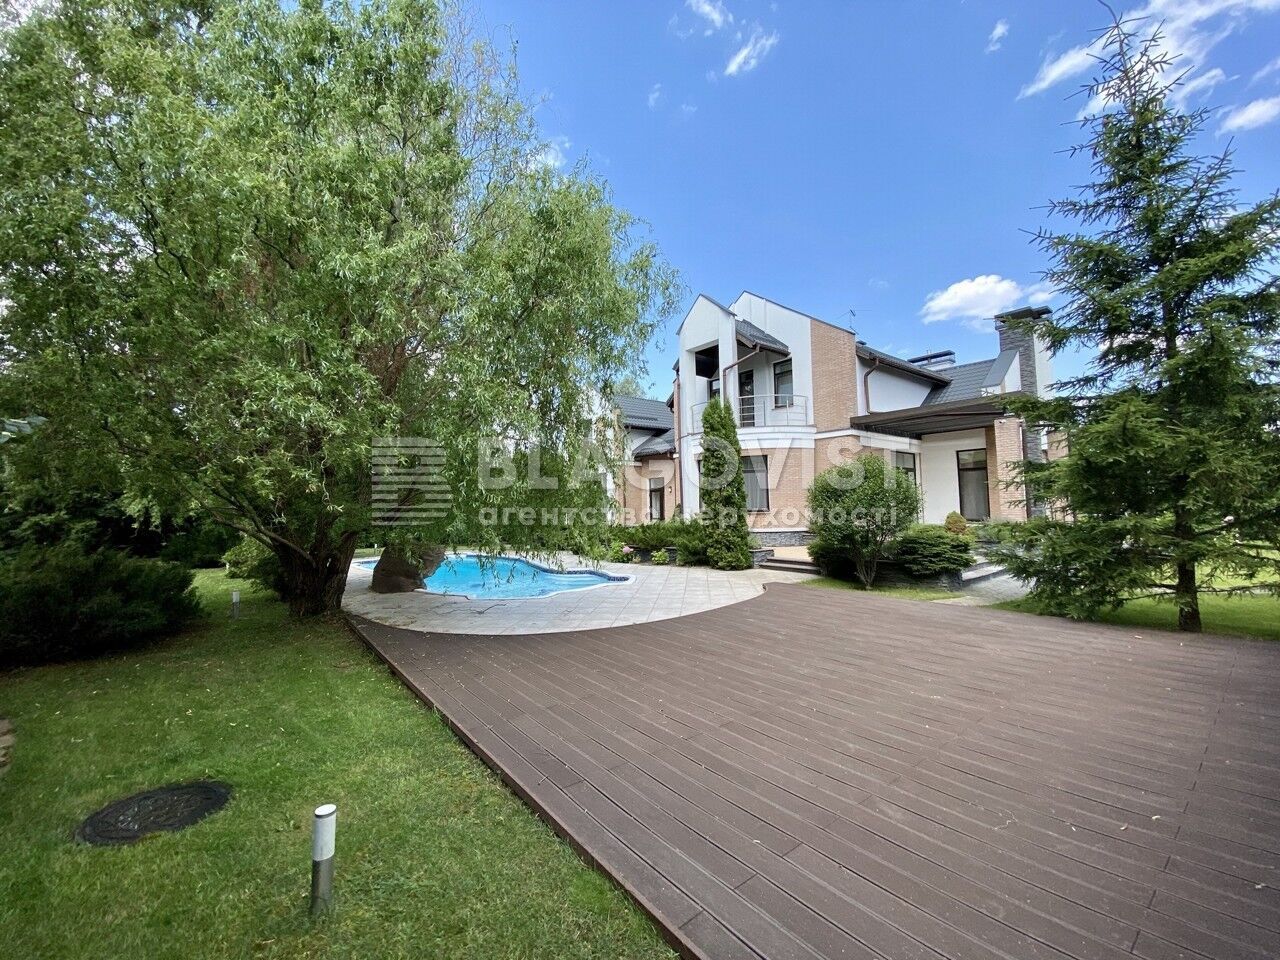 Ціна оренди будинку з басейном – 245 тис. грн. на місяць